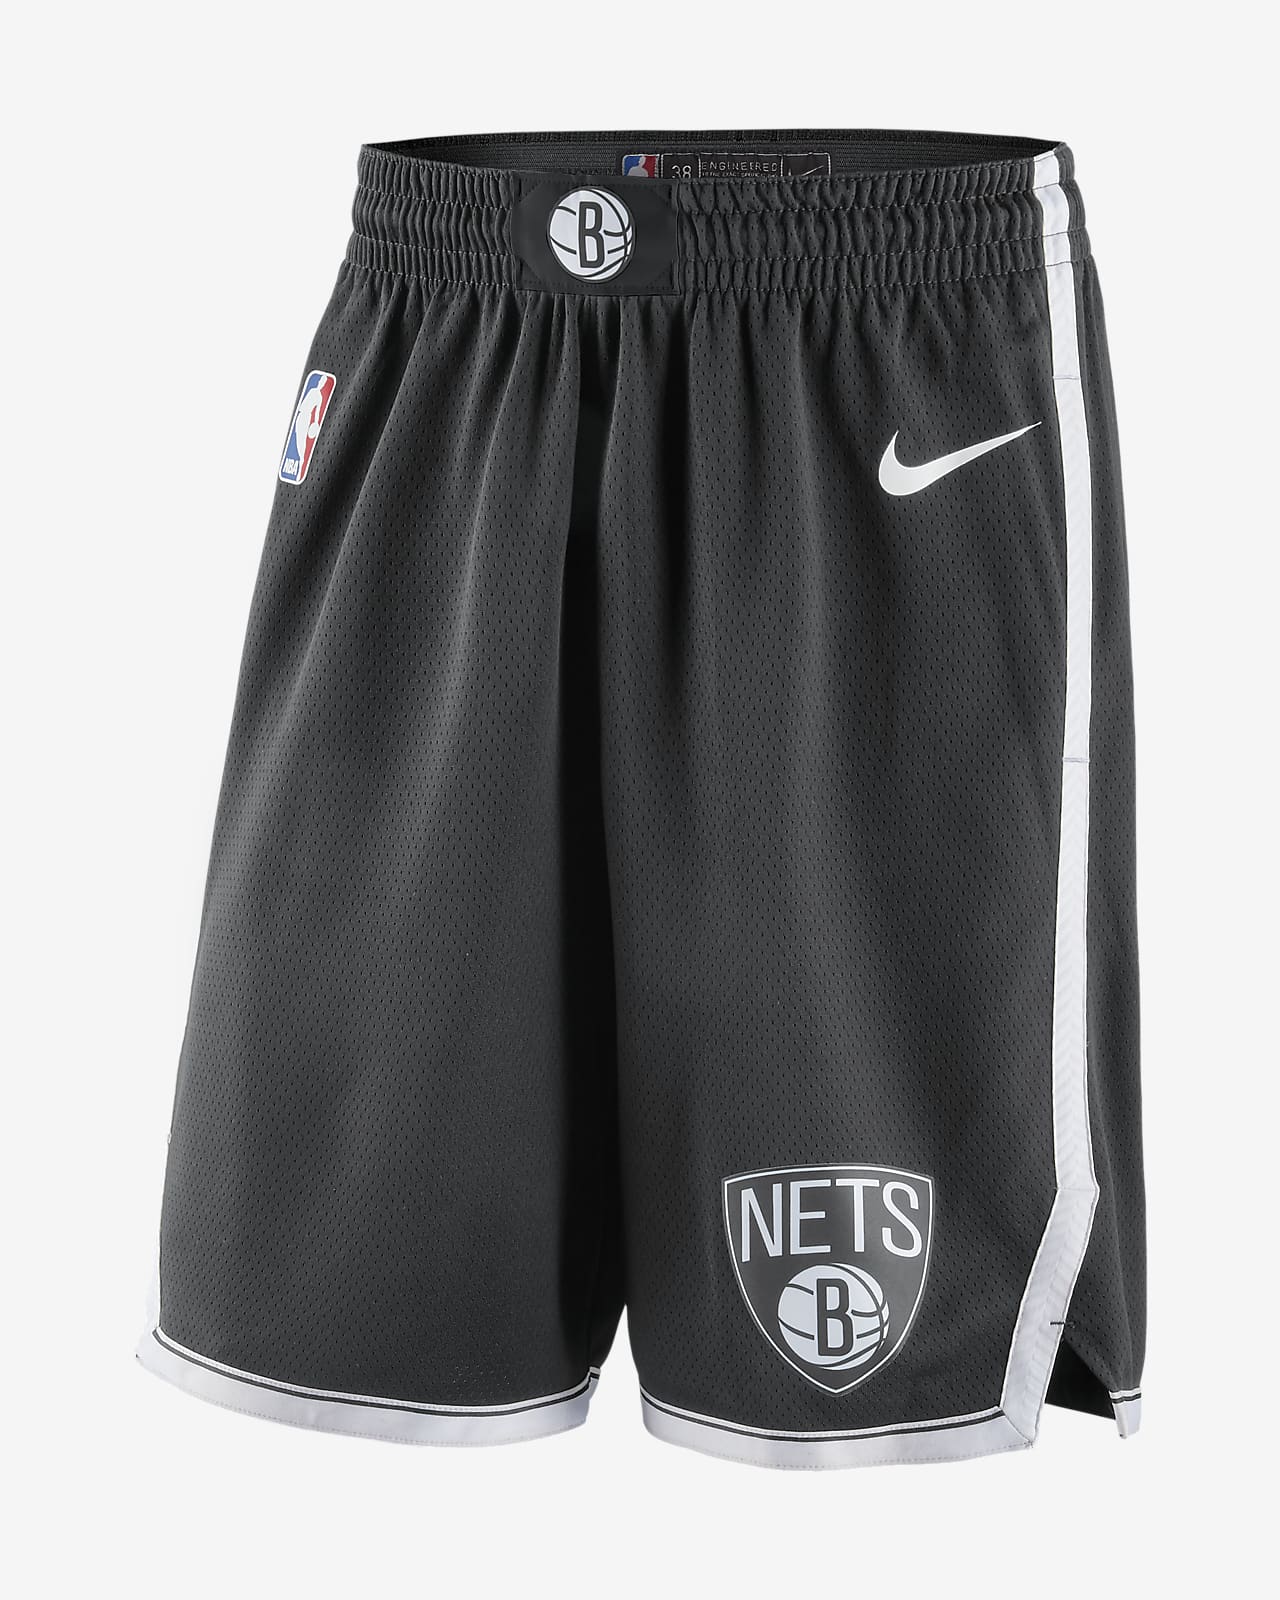 Ανδρικό σορτς Nike NBA Swingman Μπρούκλιν Νετς Icon Edition